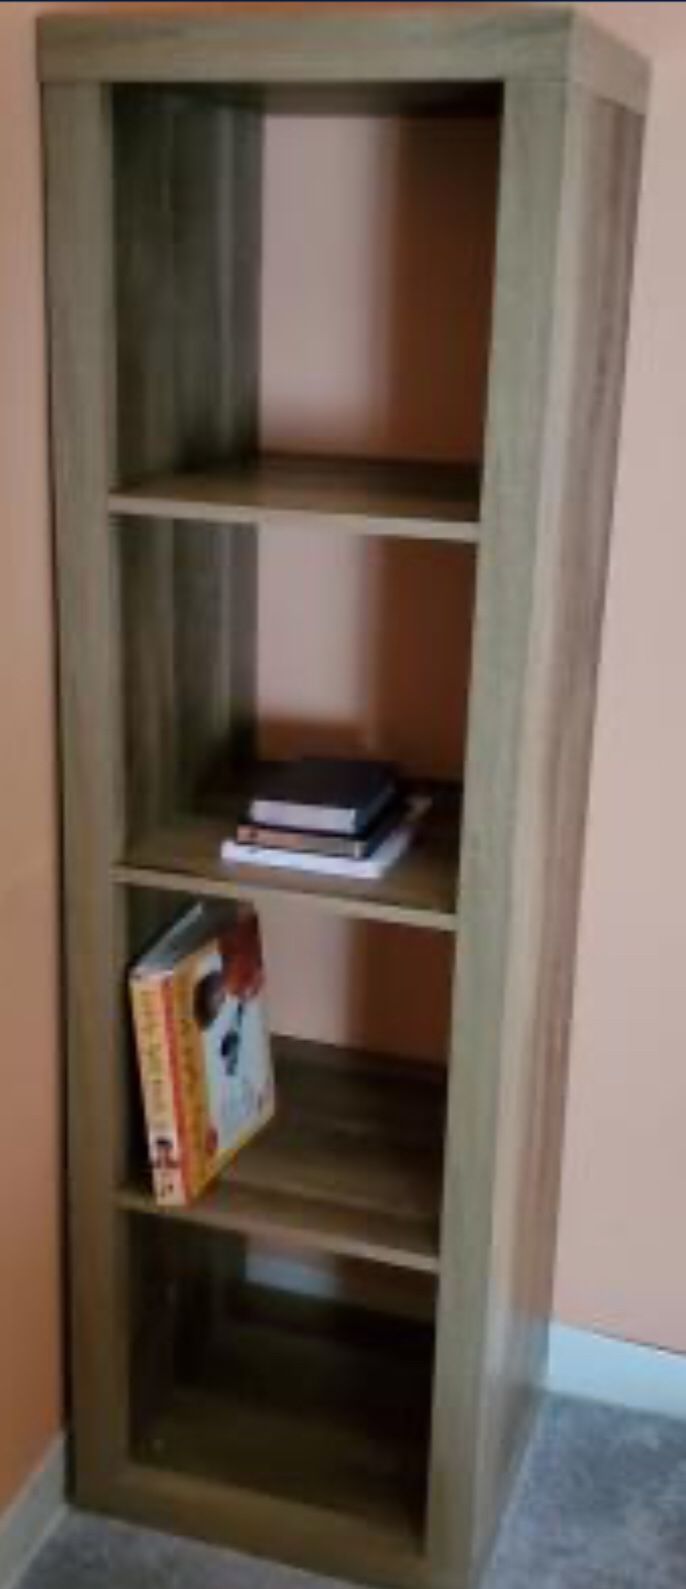 New!! 4 Cube Organizer,Storage Unit,Bookcase, Shelf Unit-Weathered Color